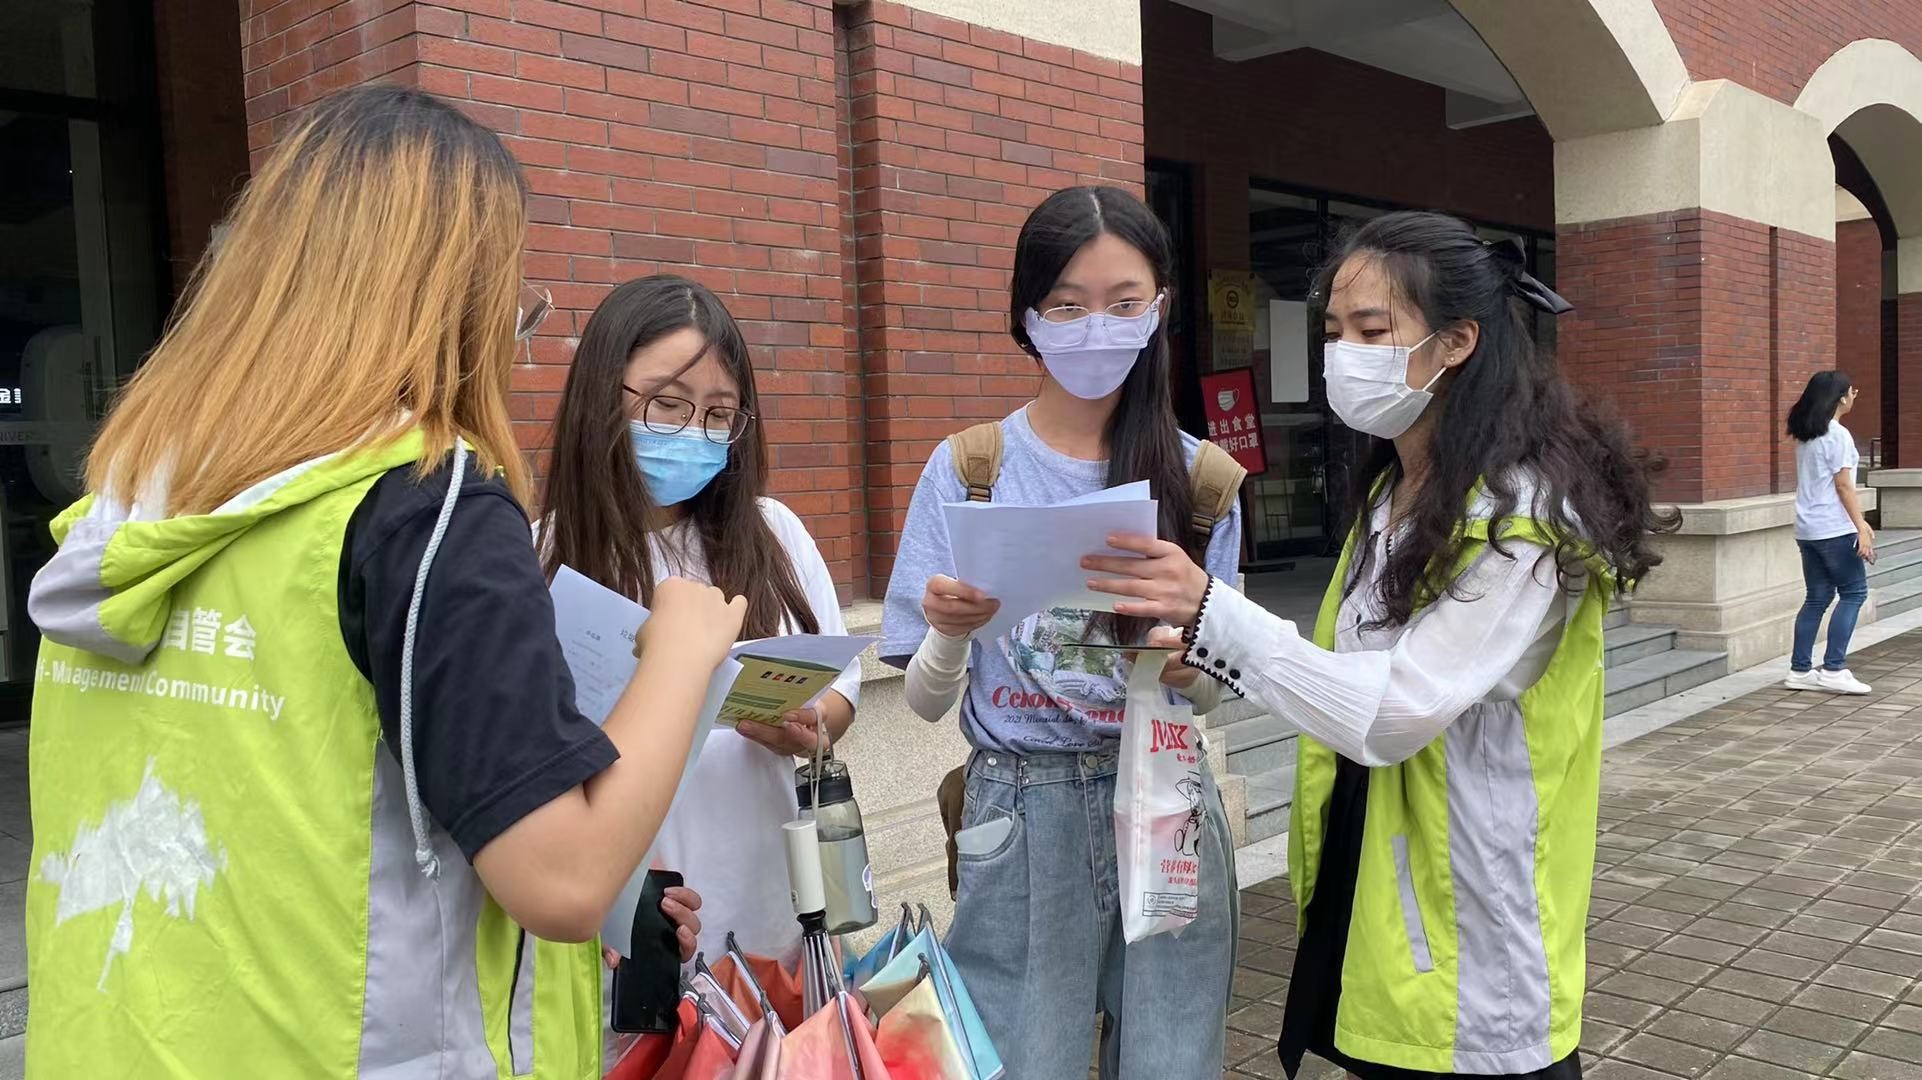 4.上海建桥学院垃圾分类志愿者在分发宣传单并讲解垃圾分类知识.jpg